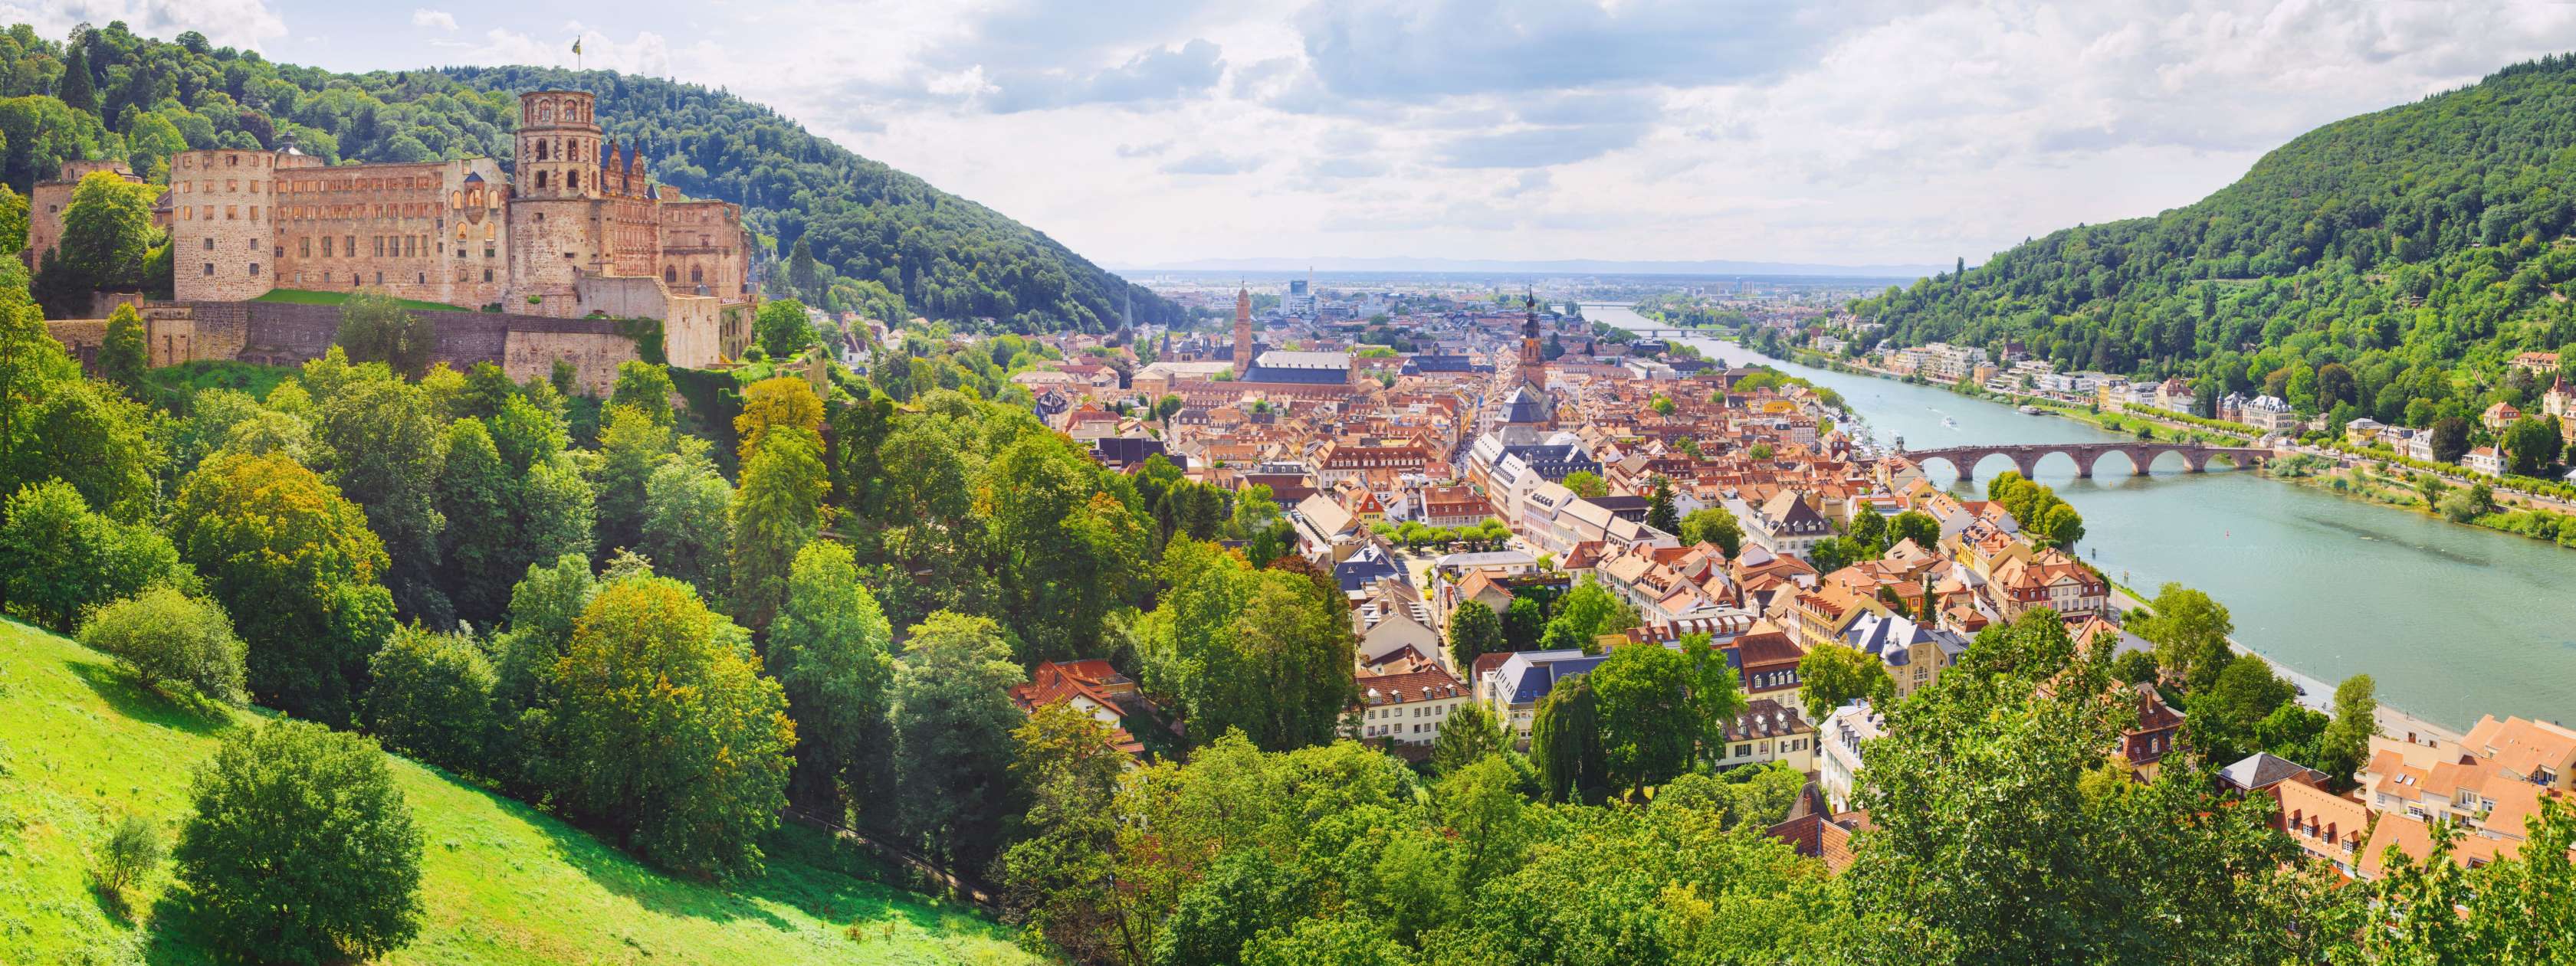 Versicherung in Heidelberg: Unsere Ansprechpartner vor Ort helfen Ihnen mit Ihren Versicherungfragen weiter